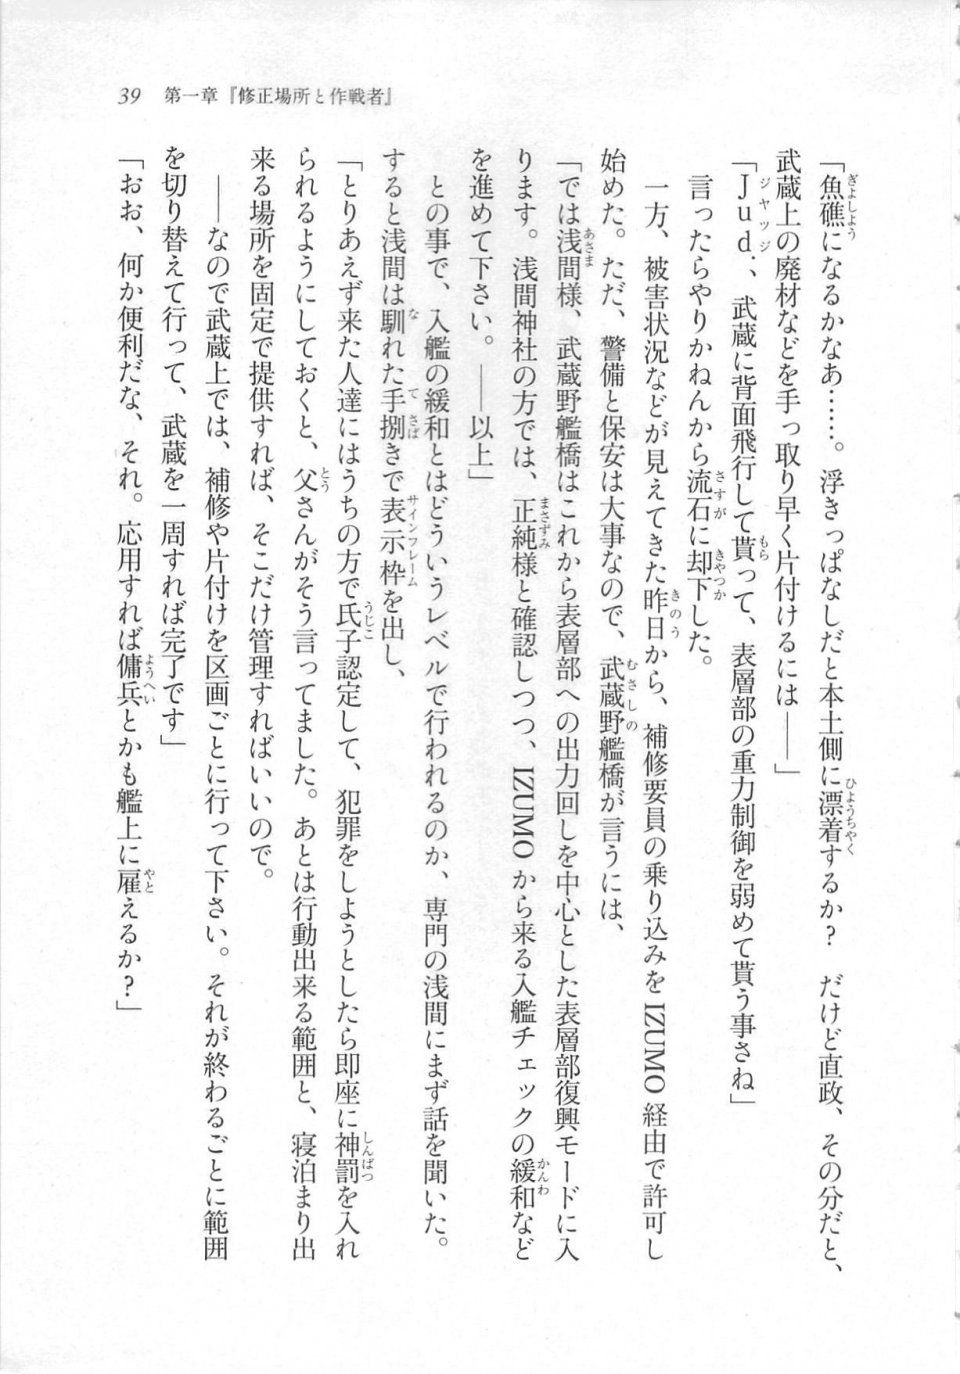 Kyoukai Senjou no Horizon LN Sidestory Vol 3 - Photo #43